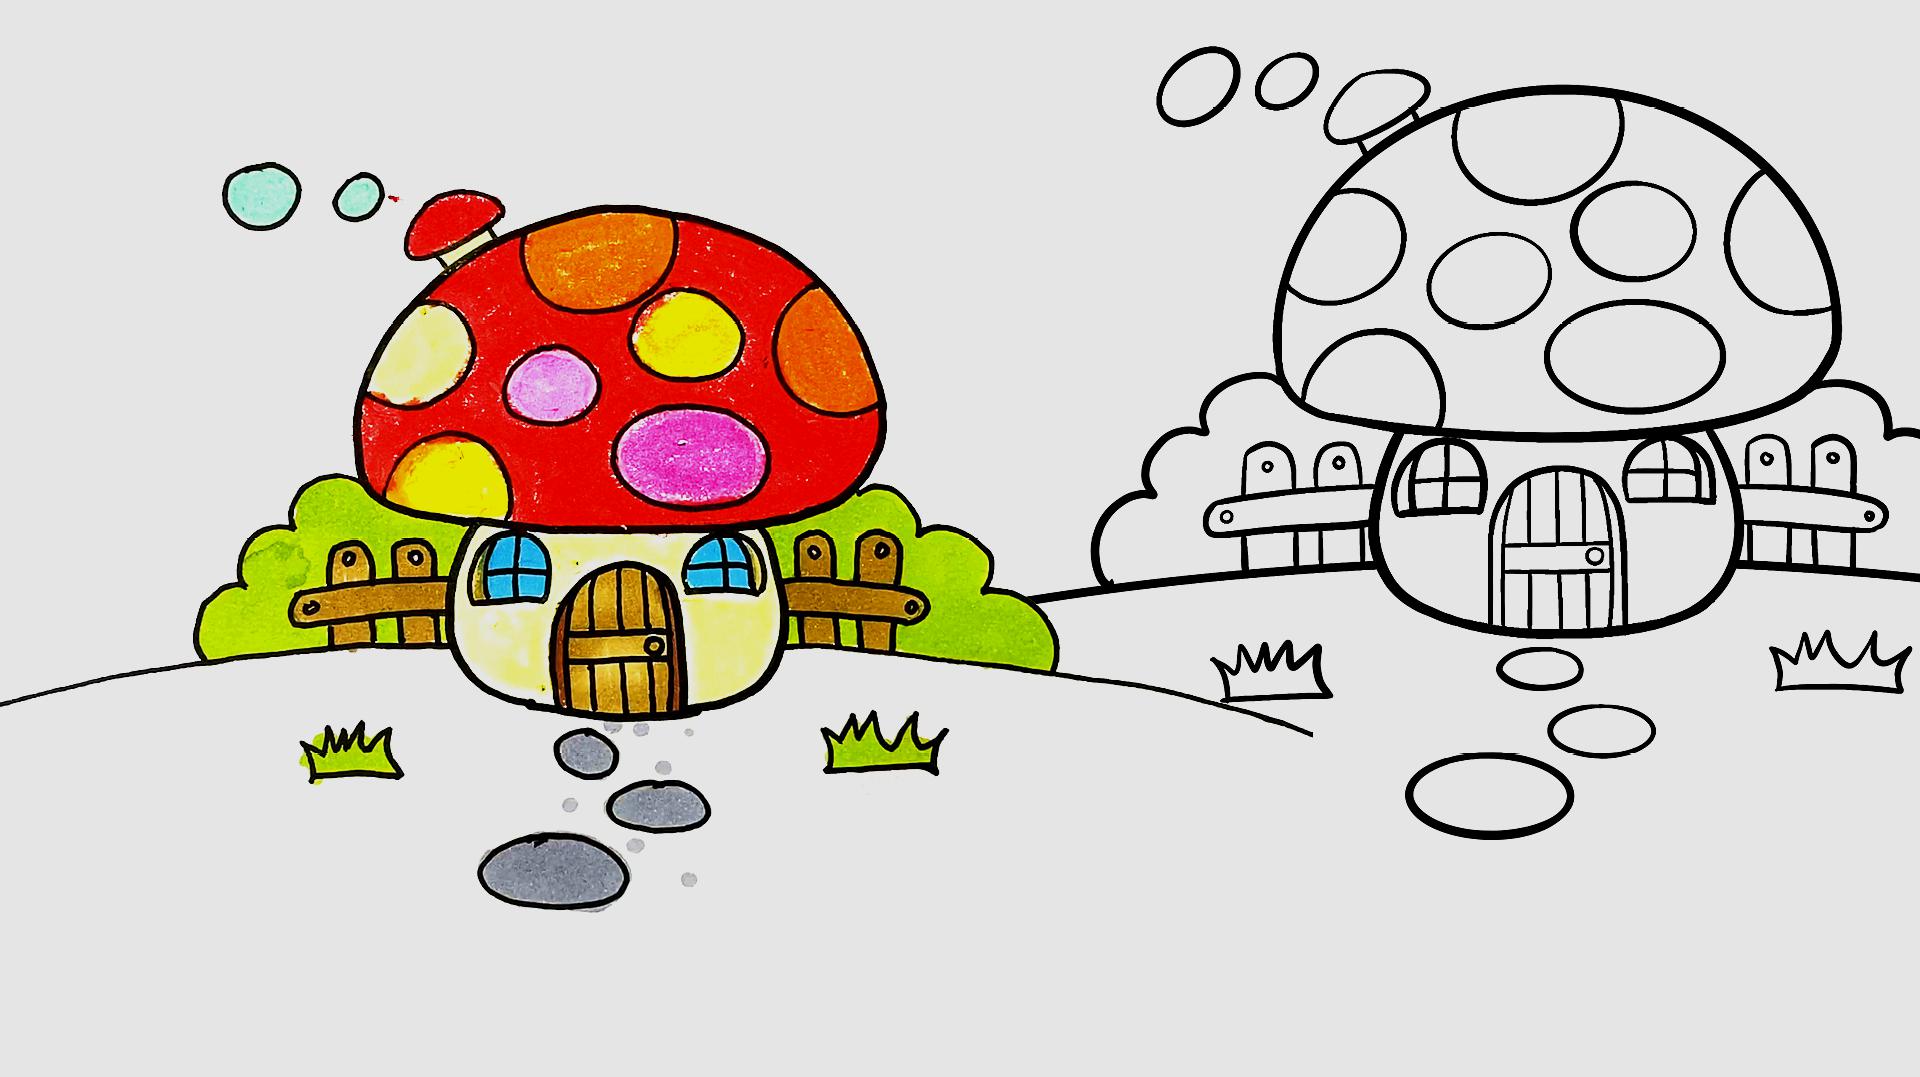 1分钟轻松学会 服务升级 2简笔画作品三:圆圆的蘑菇屋,那么可爱的房子